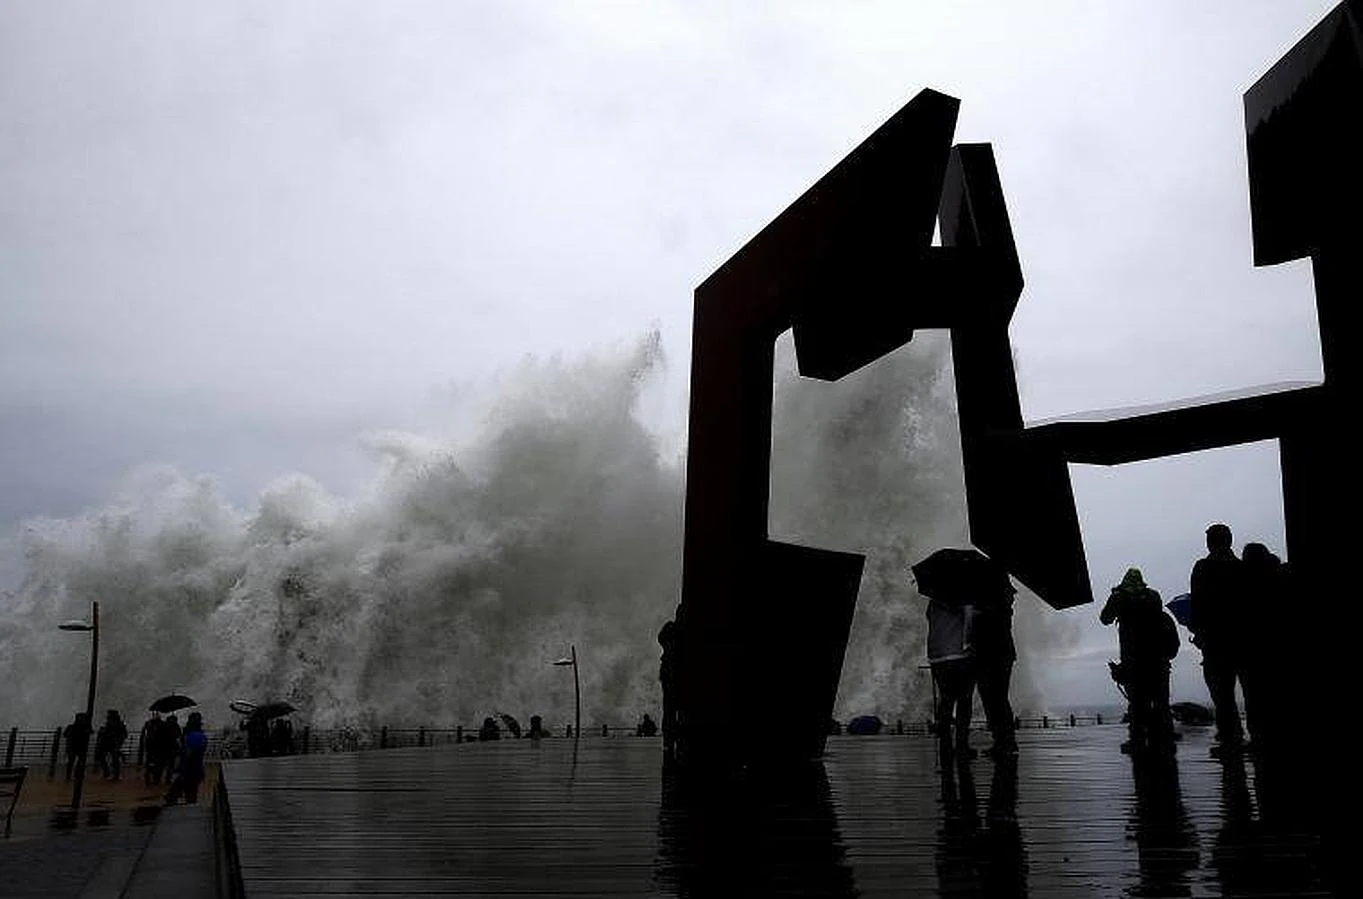 Una ola junto a la escultura «Construcción vacía», de Jorge Oteiza, en el Paseo Nuevo de San Sebastián, donde se ha decretado la alerta naranja por fenómenos costeros